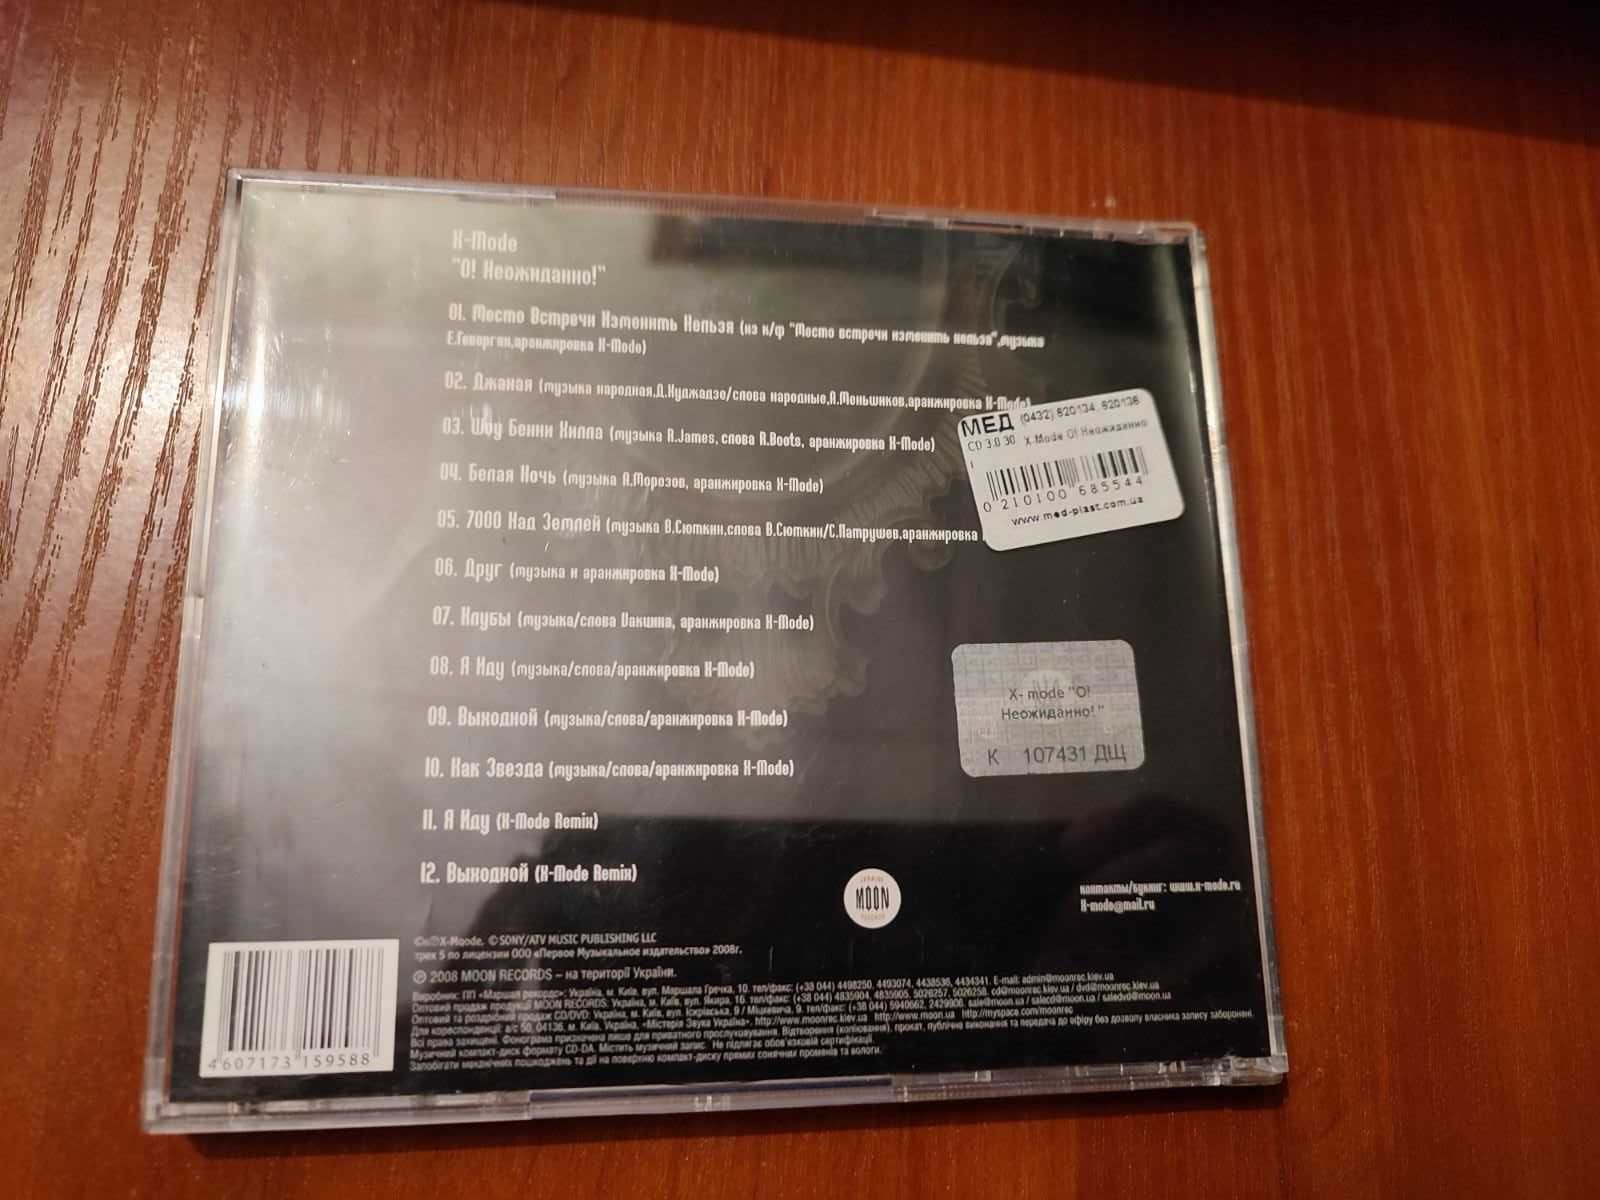 Музыкальный CD X-Mode альбом О! Неожиданно 2008 год.